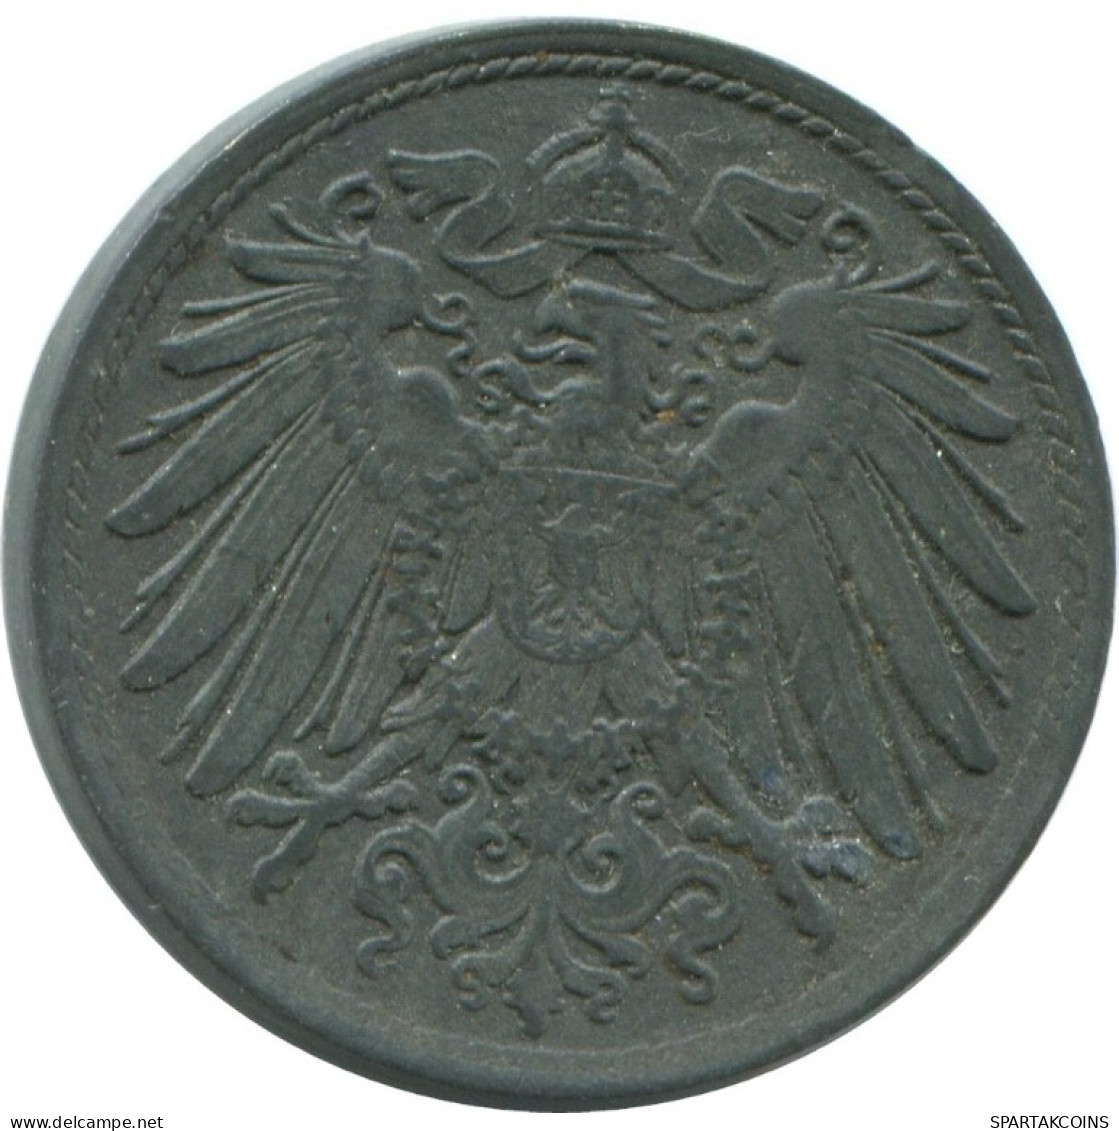 10 PFENNIG 1919 GERMANY Coin #AE548.U.A - 10 Pfennig